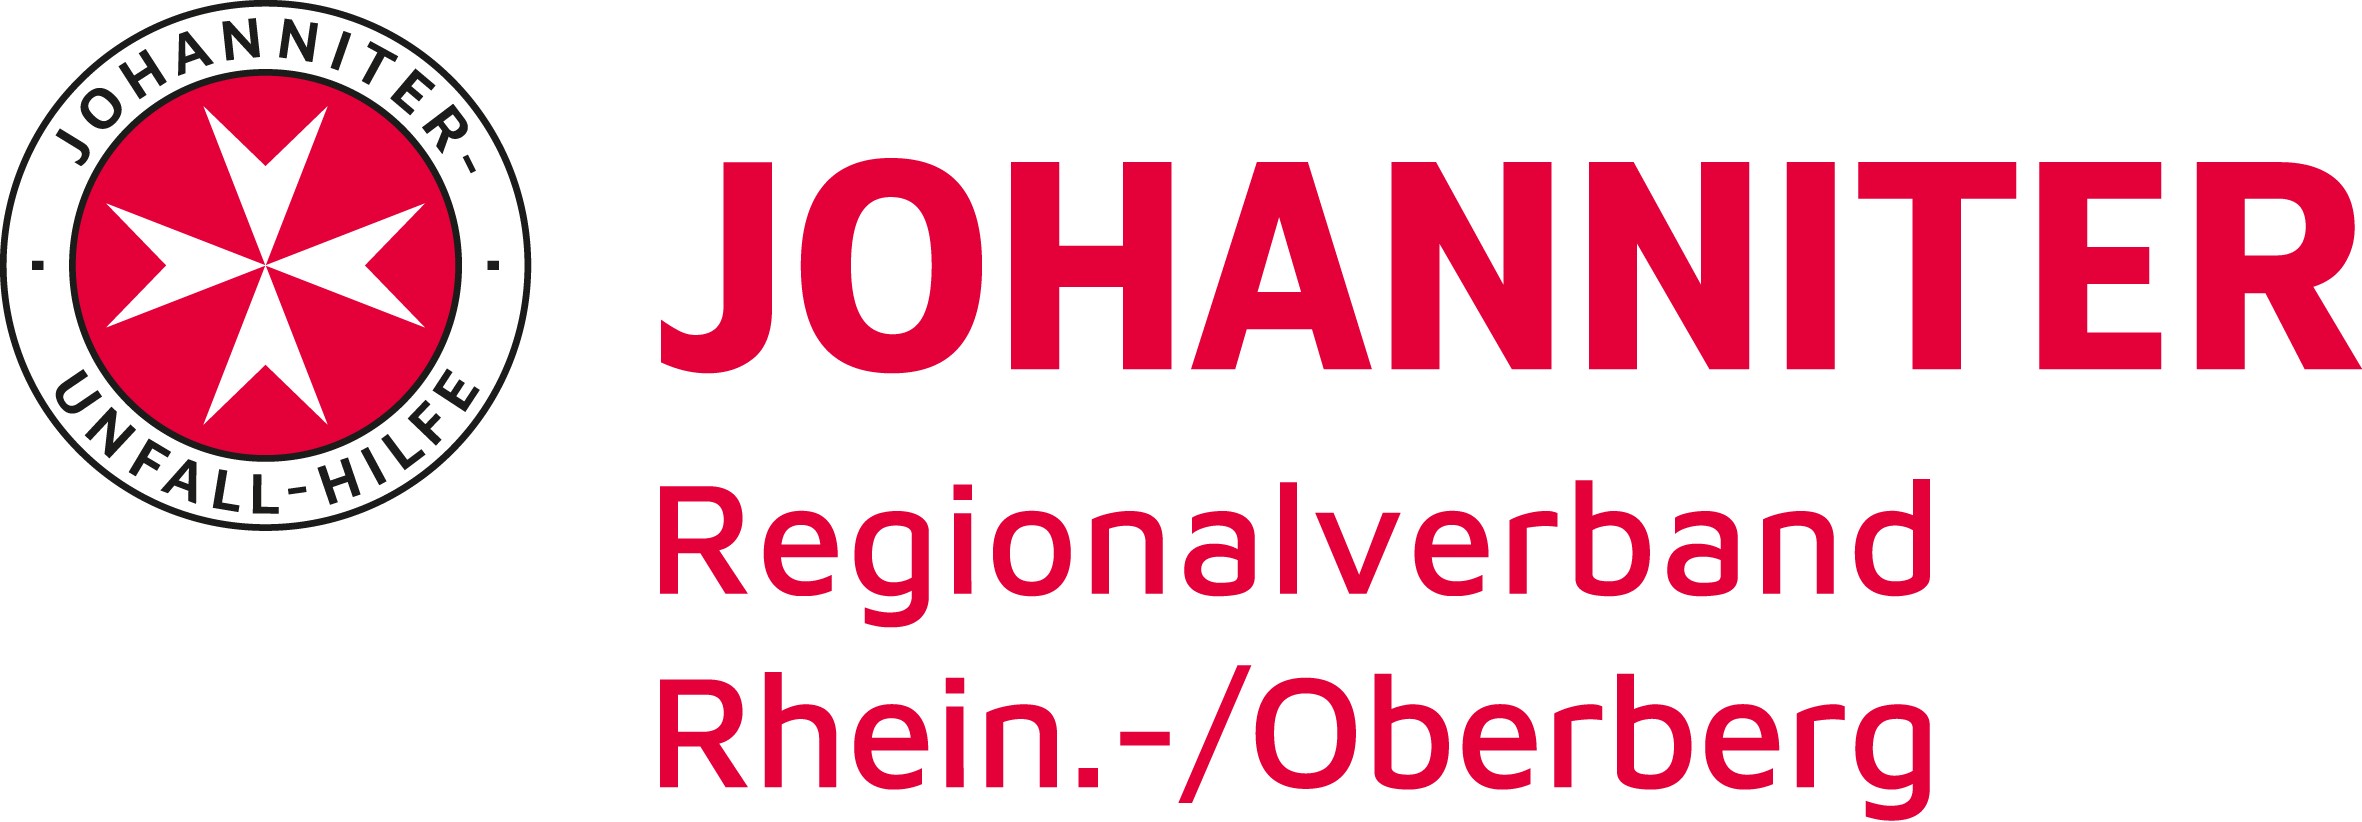 Johanniter_Logo_inkl._Name_RV.jpg